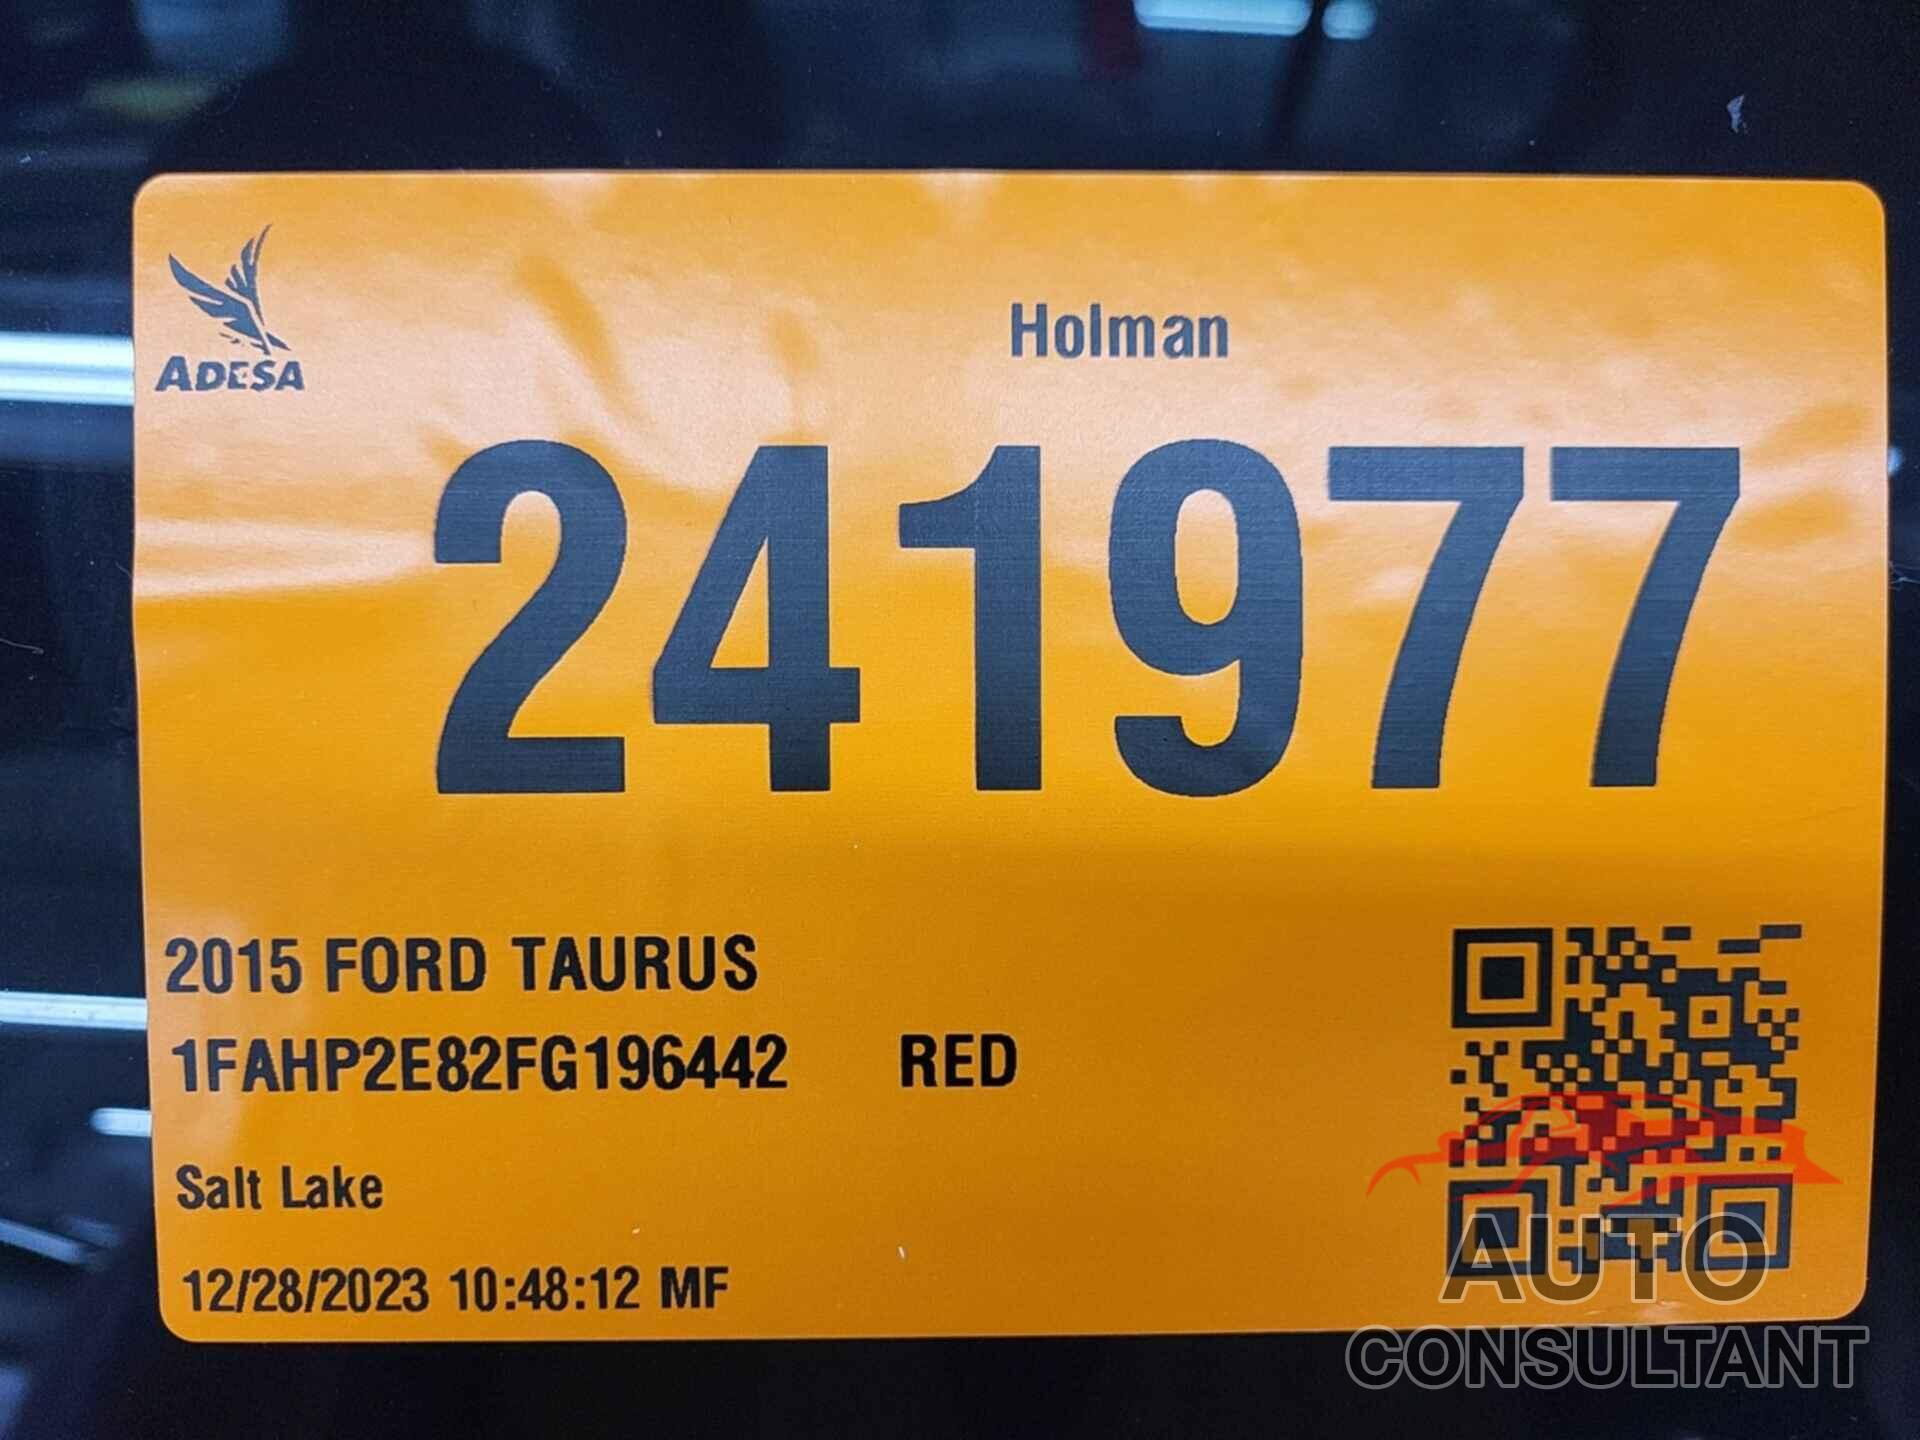 FORD TAURUS 2015 - 1FAHP2E82FG196442